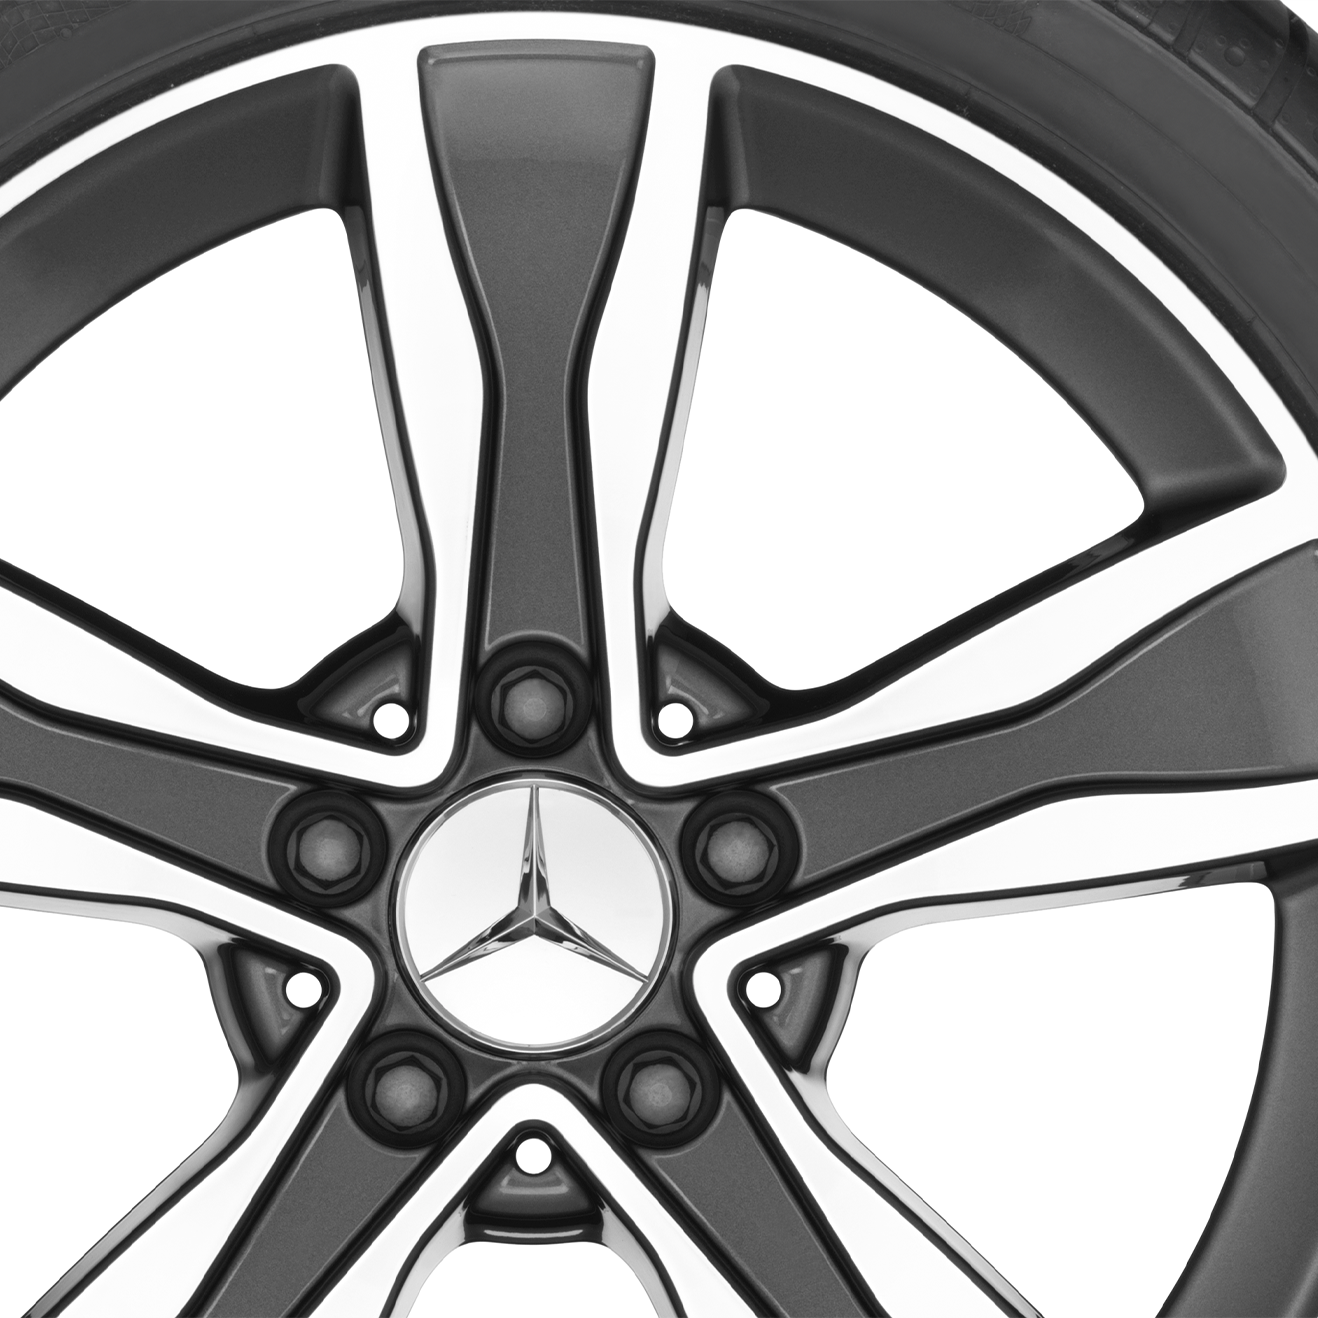 Mercedes-Benz Sommerkomplettrad 5-Speichen-Rad Tremolit-metallic glanzgedreht